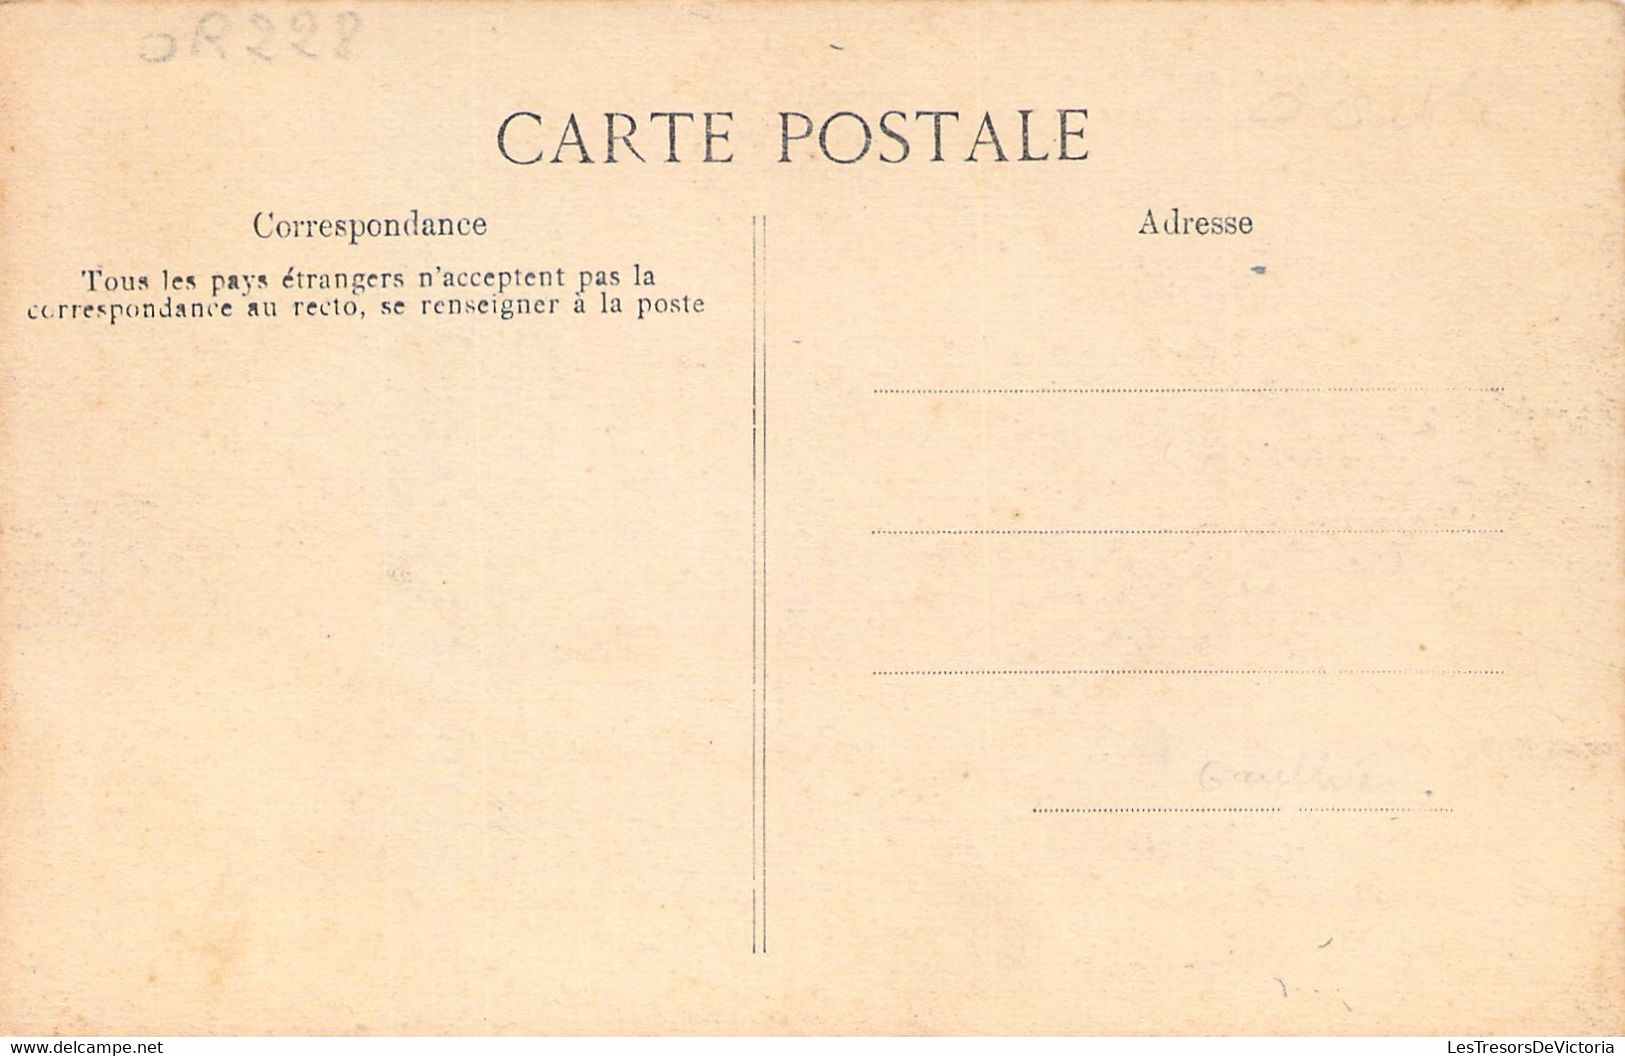 NOUVELLE CALEDONIE - Le LAC VAHIRIA - Carte Postale Ancienne - Nouvelle Calédonie